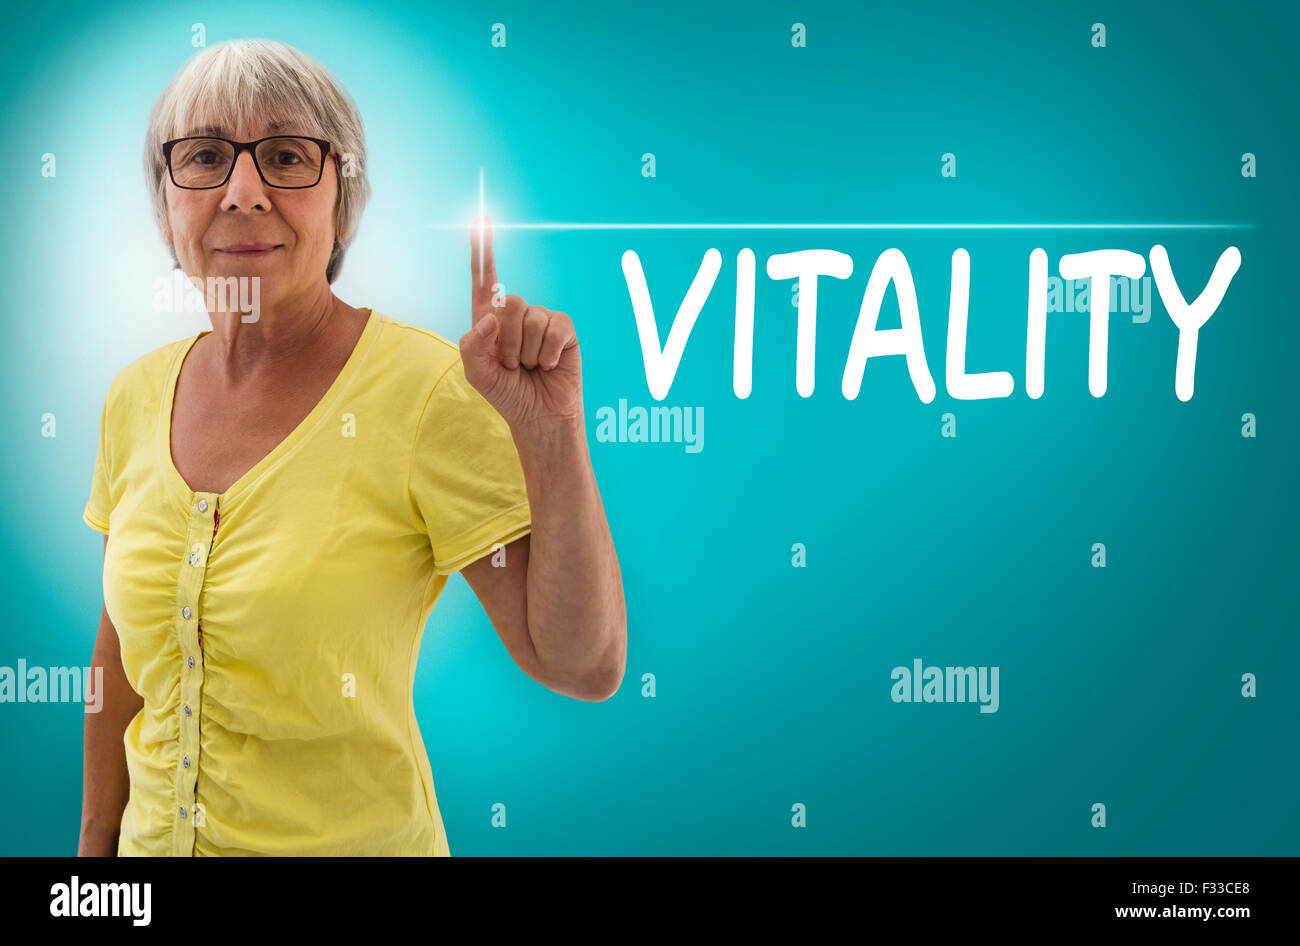 Vitalität-Touchscreen zeigt Senior Woman Konzept. Stockfoto